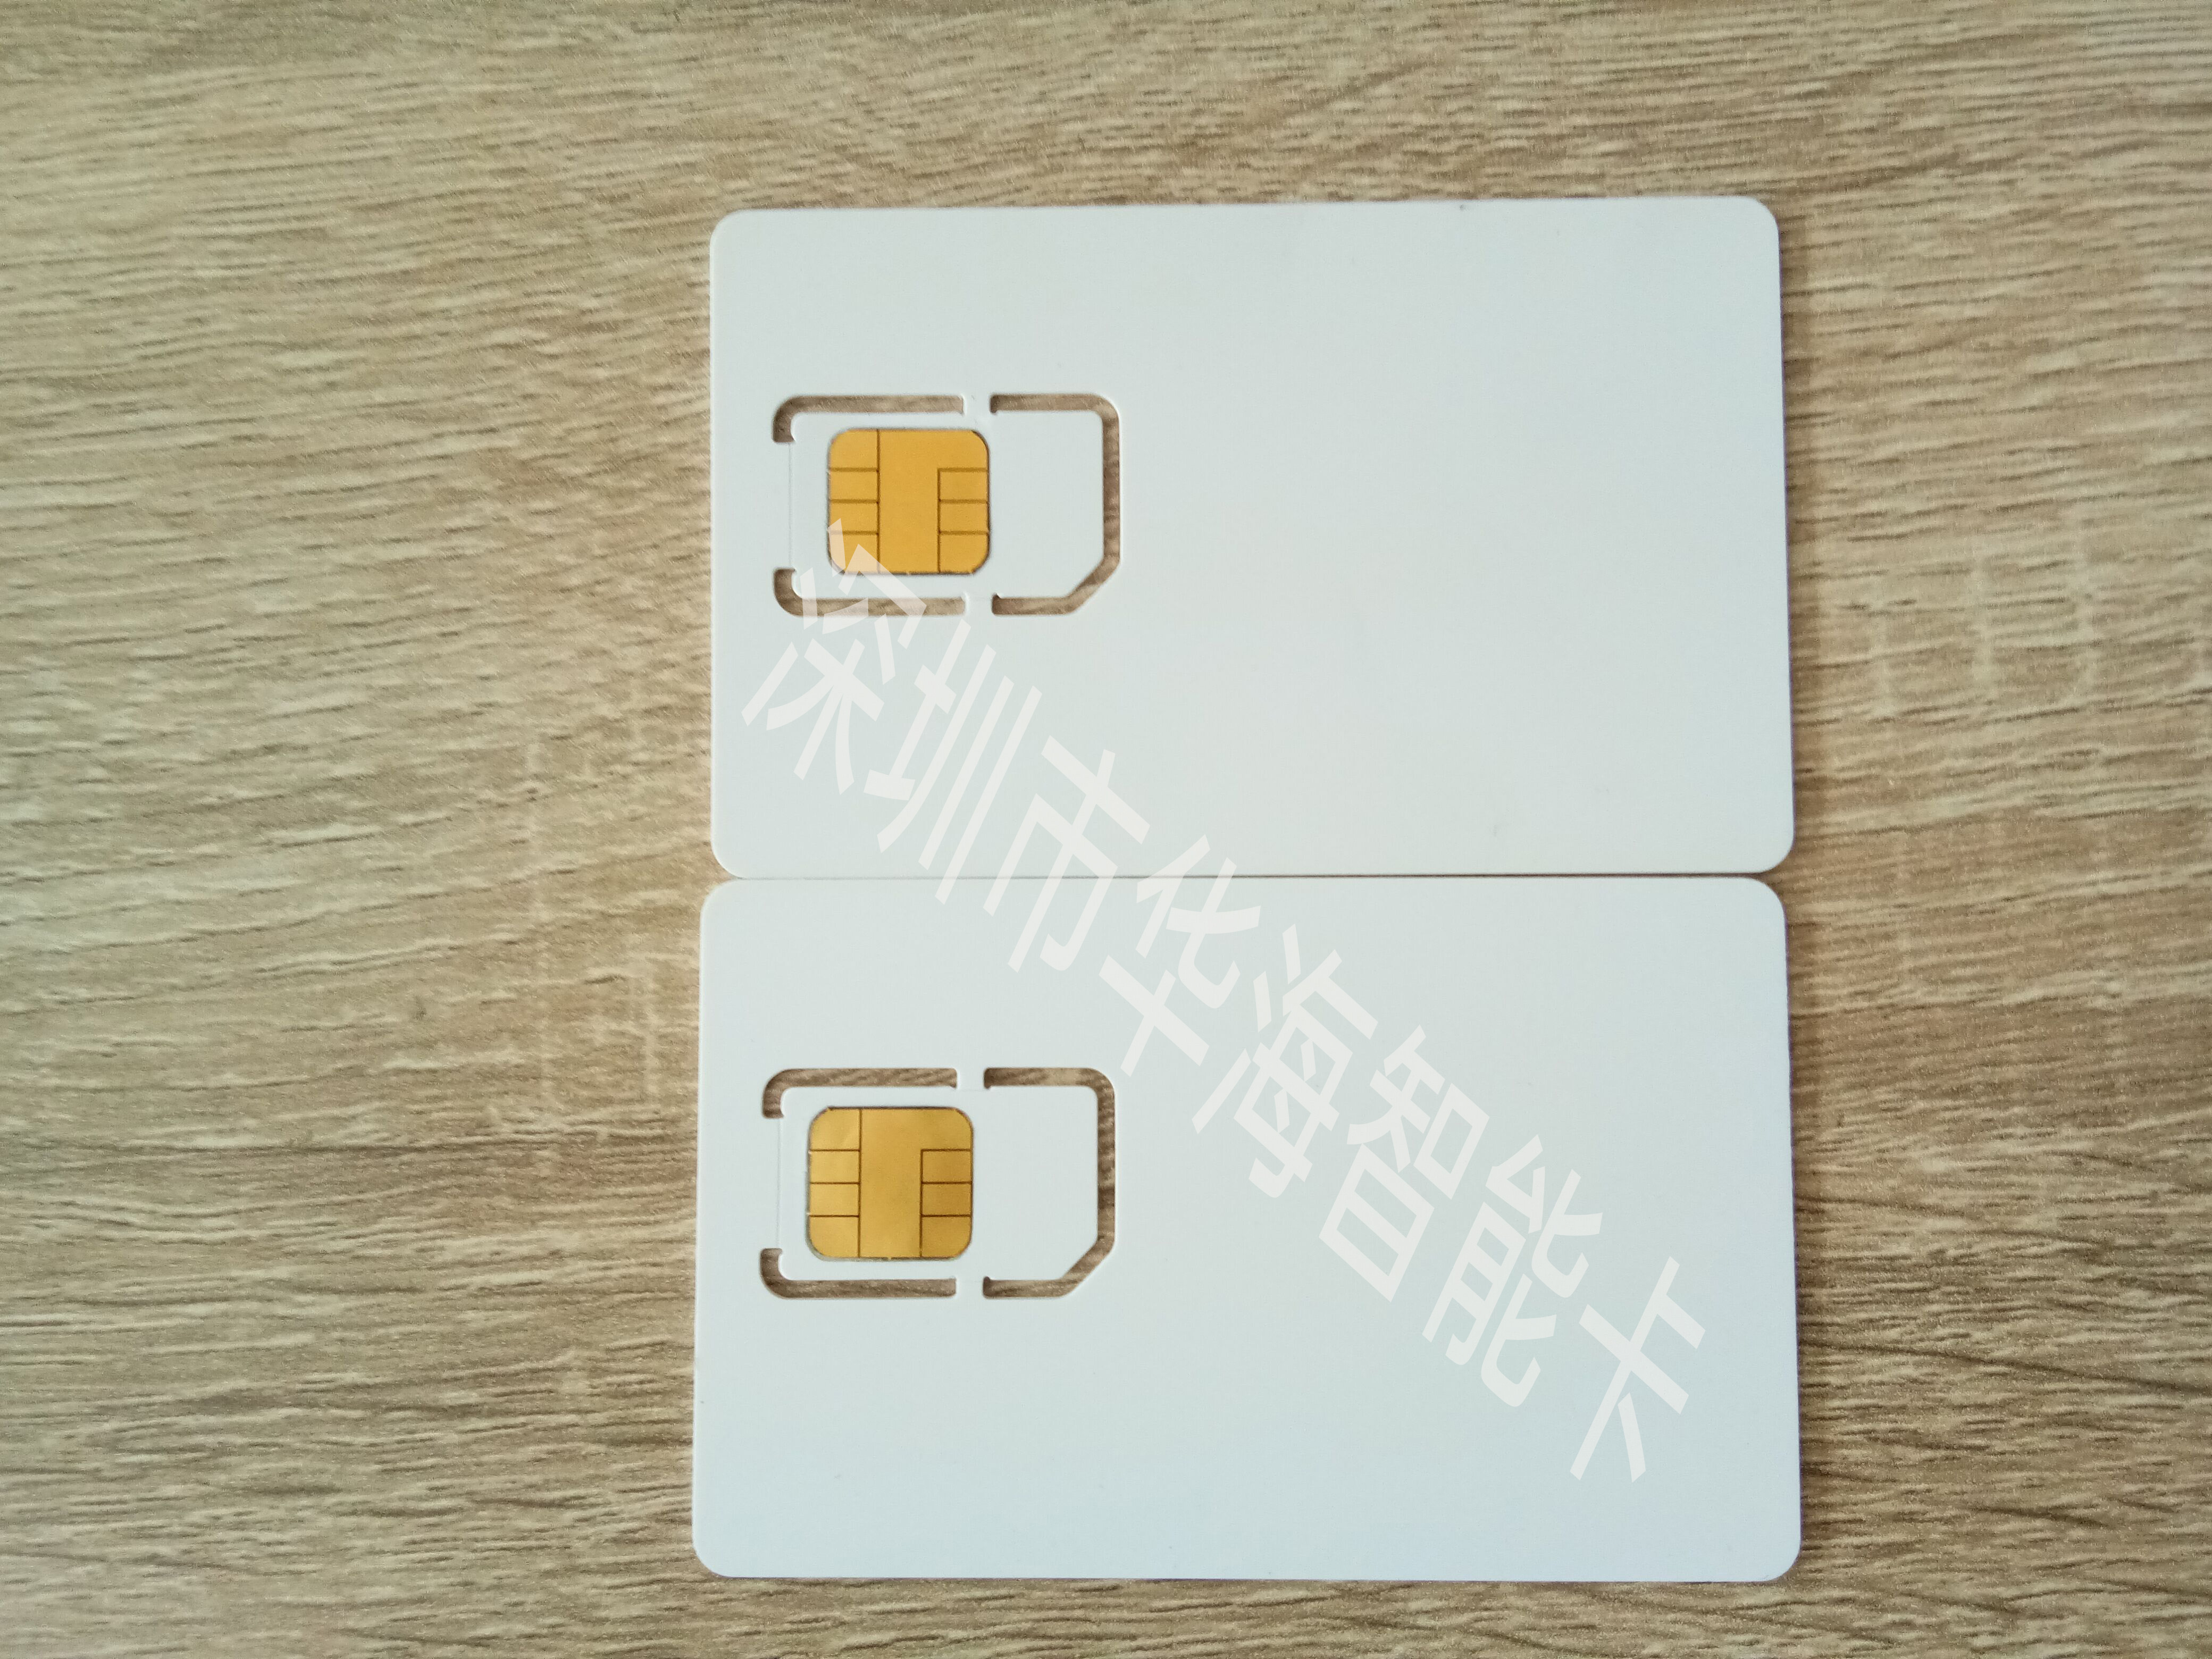 供应5G手机测试卡 USIM卡 5G专网卡 5G测试白卡